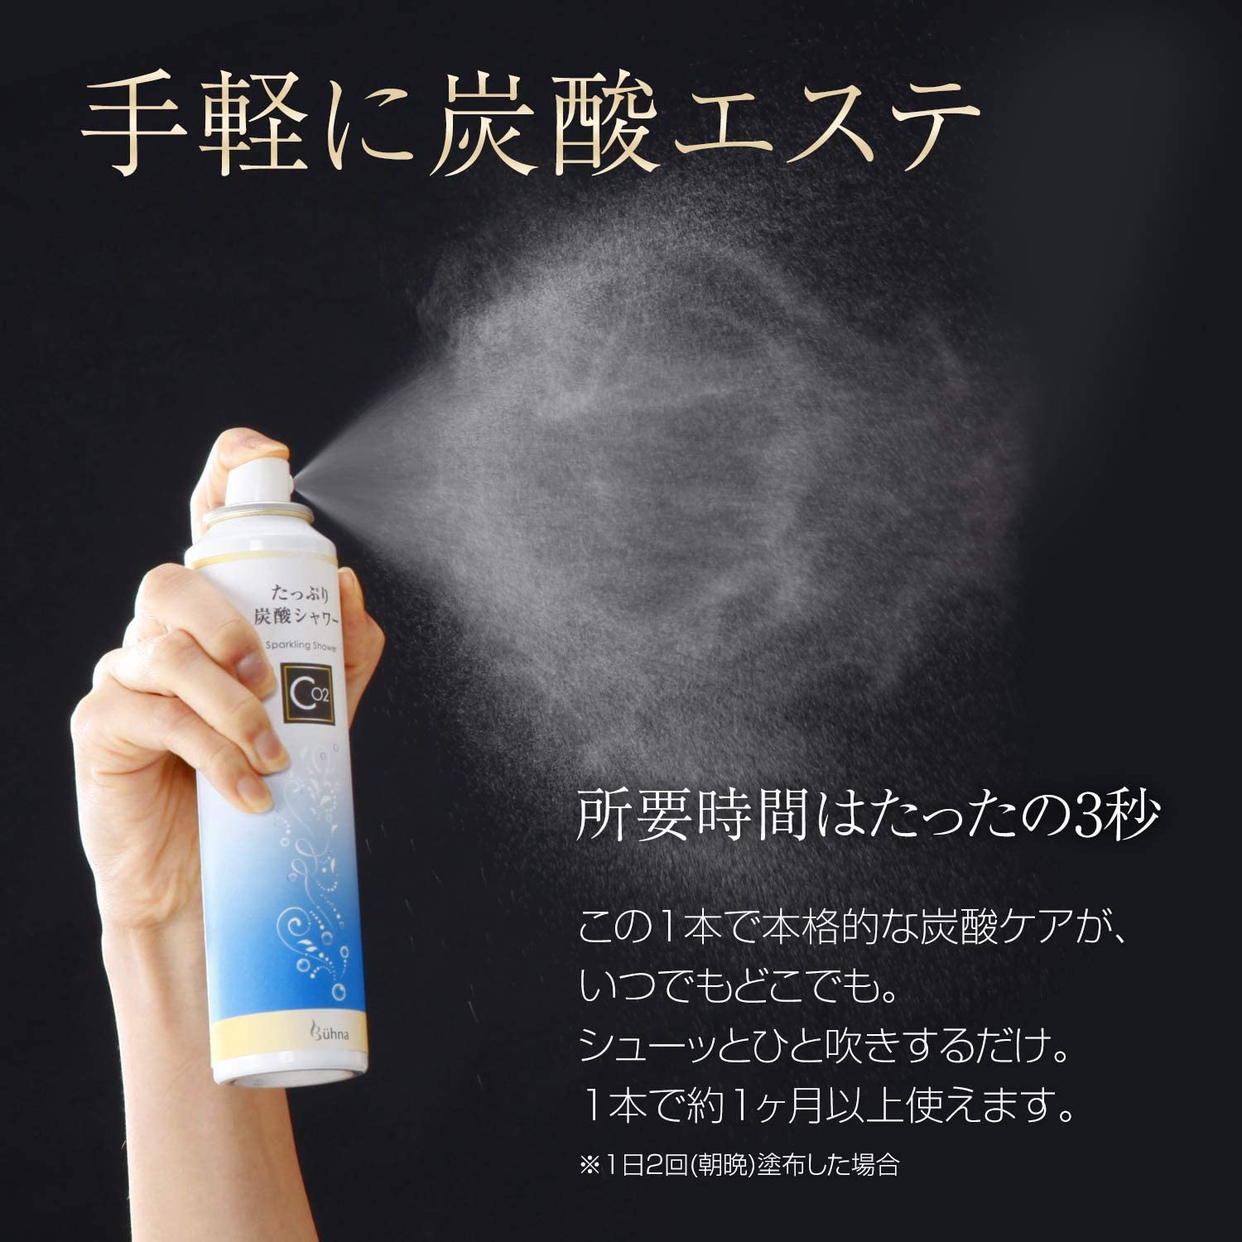 Buhna(ビューナ) たっぷり炭酸シャワー 炭酸ミスト 化粧水の商品画像5 